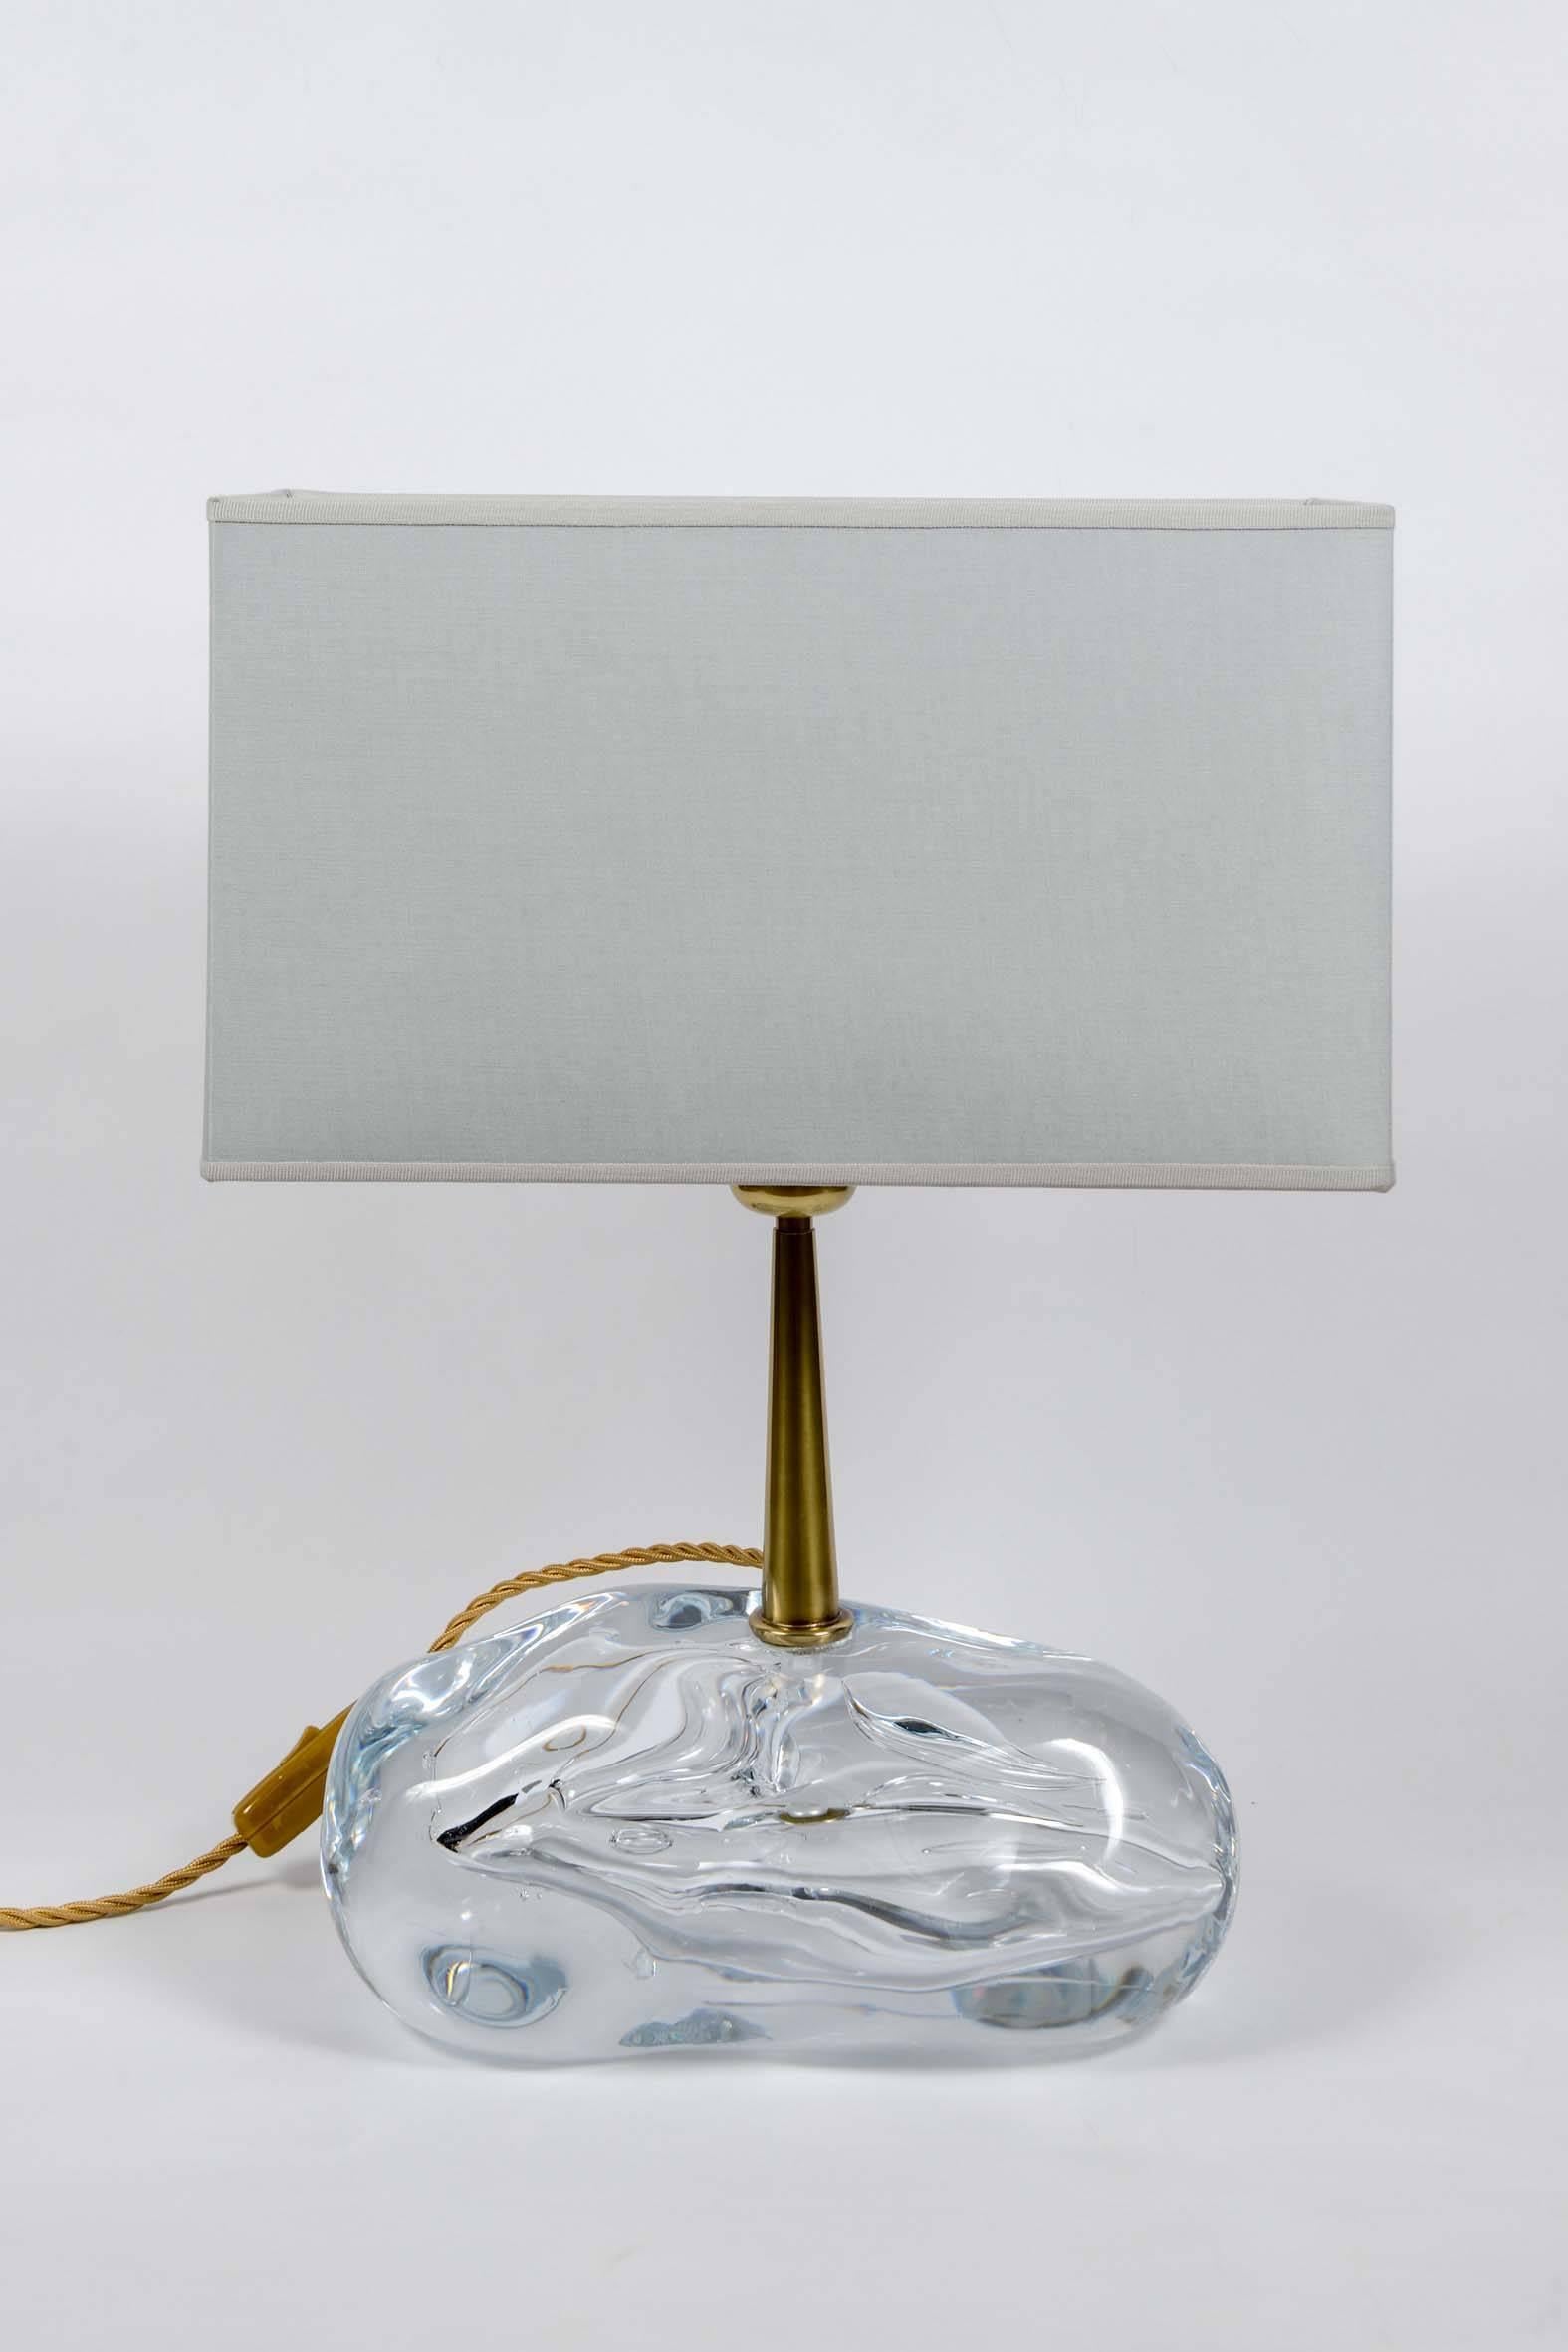 Paar schöne Lampen aus einem Block von handgefertigtem Klarglas mit einem Messingstiel, der die Lichtquelle und den Schirm hält.

Esperia-Aufkleber auf der Steckdose, entworfen von Angelo Brotto.